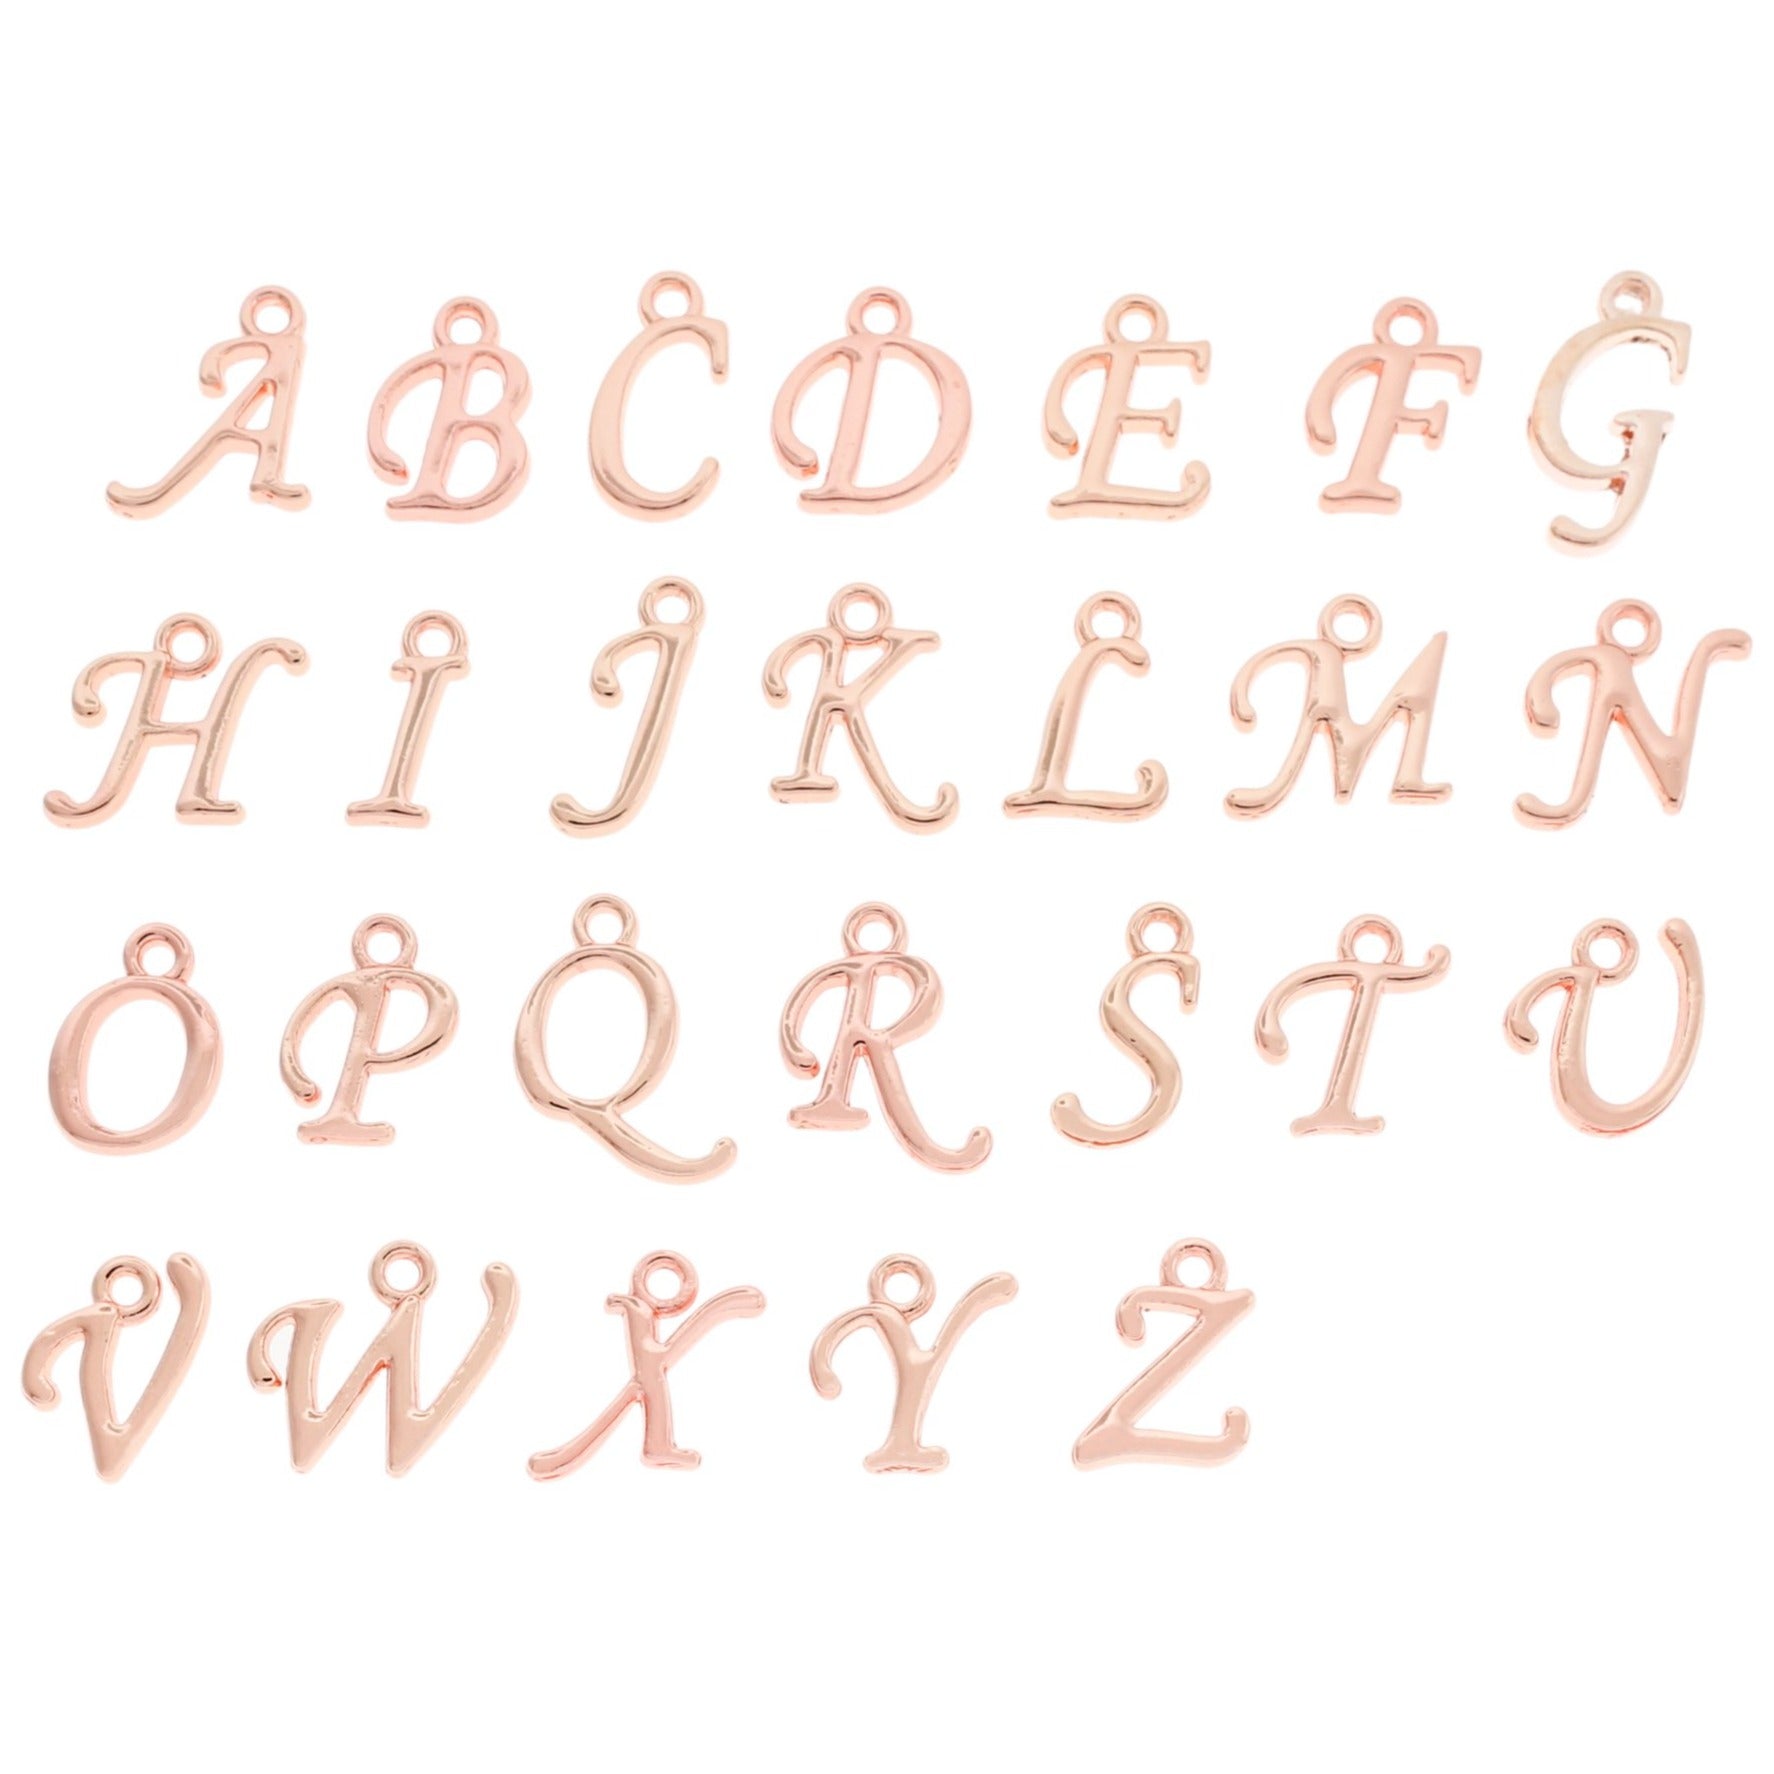 26 Alphabet Cursive Letter Silver Tone Charms - 2 Sets - ALPHA800